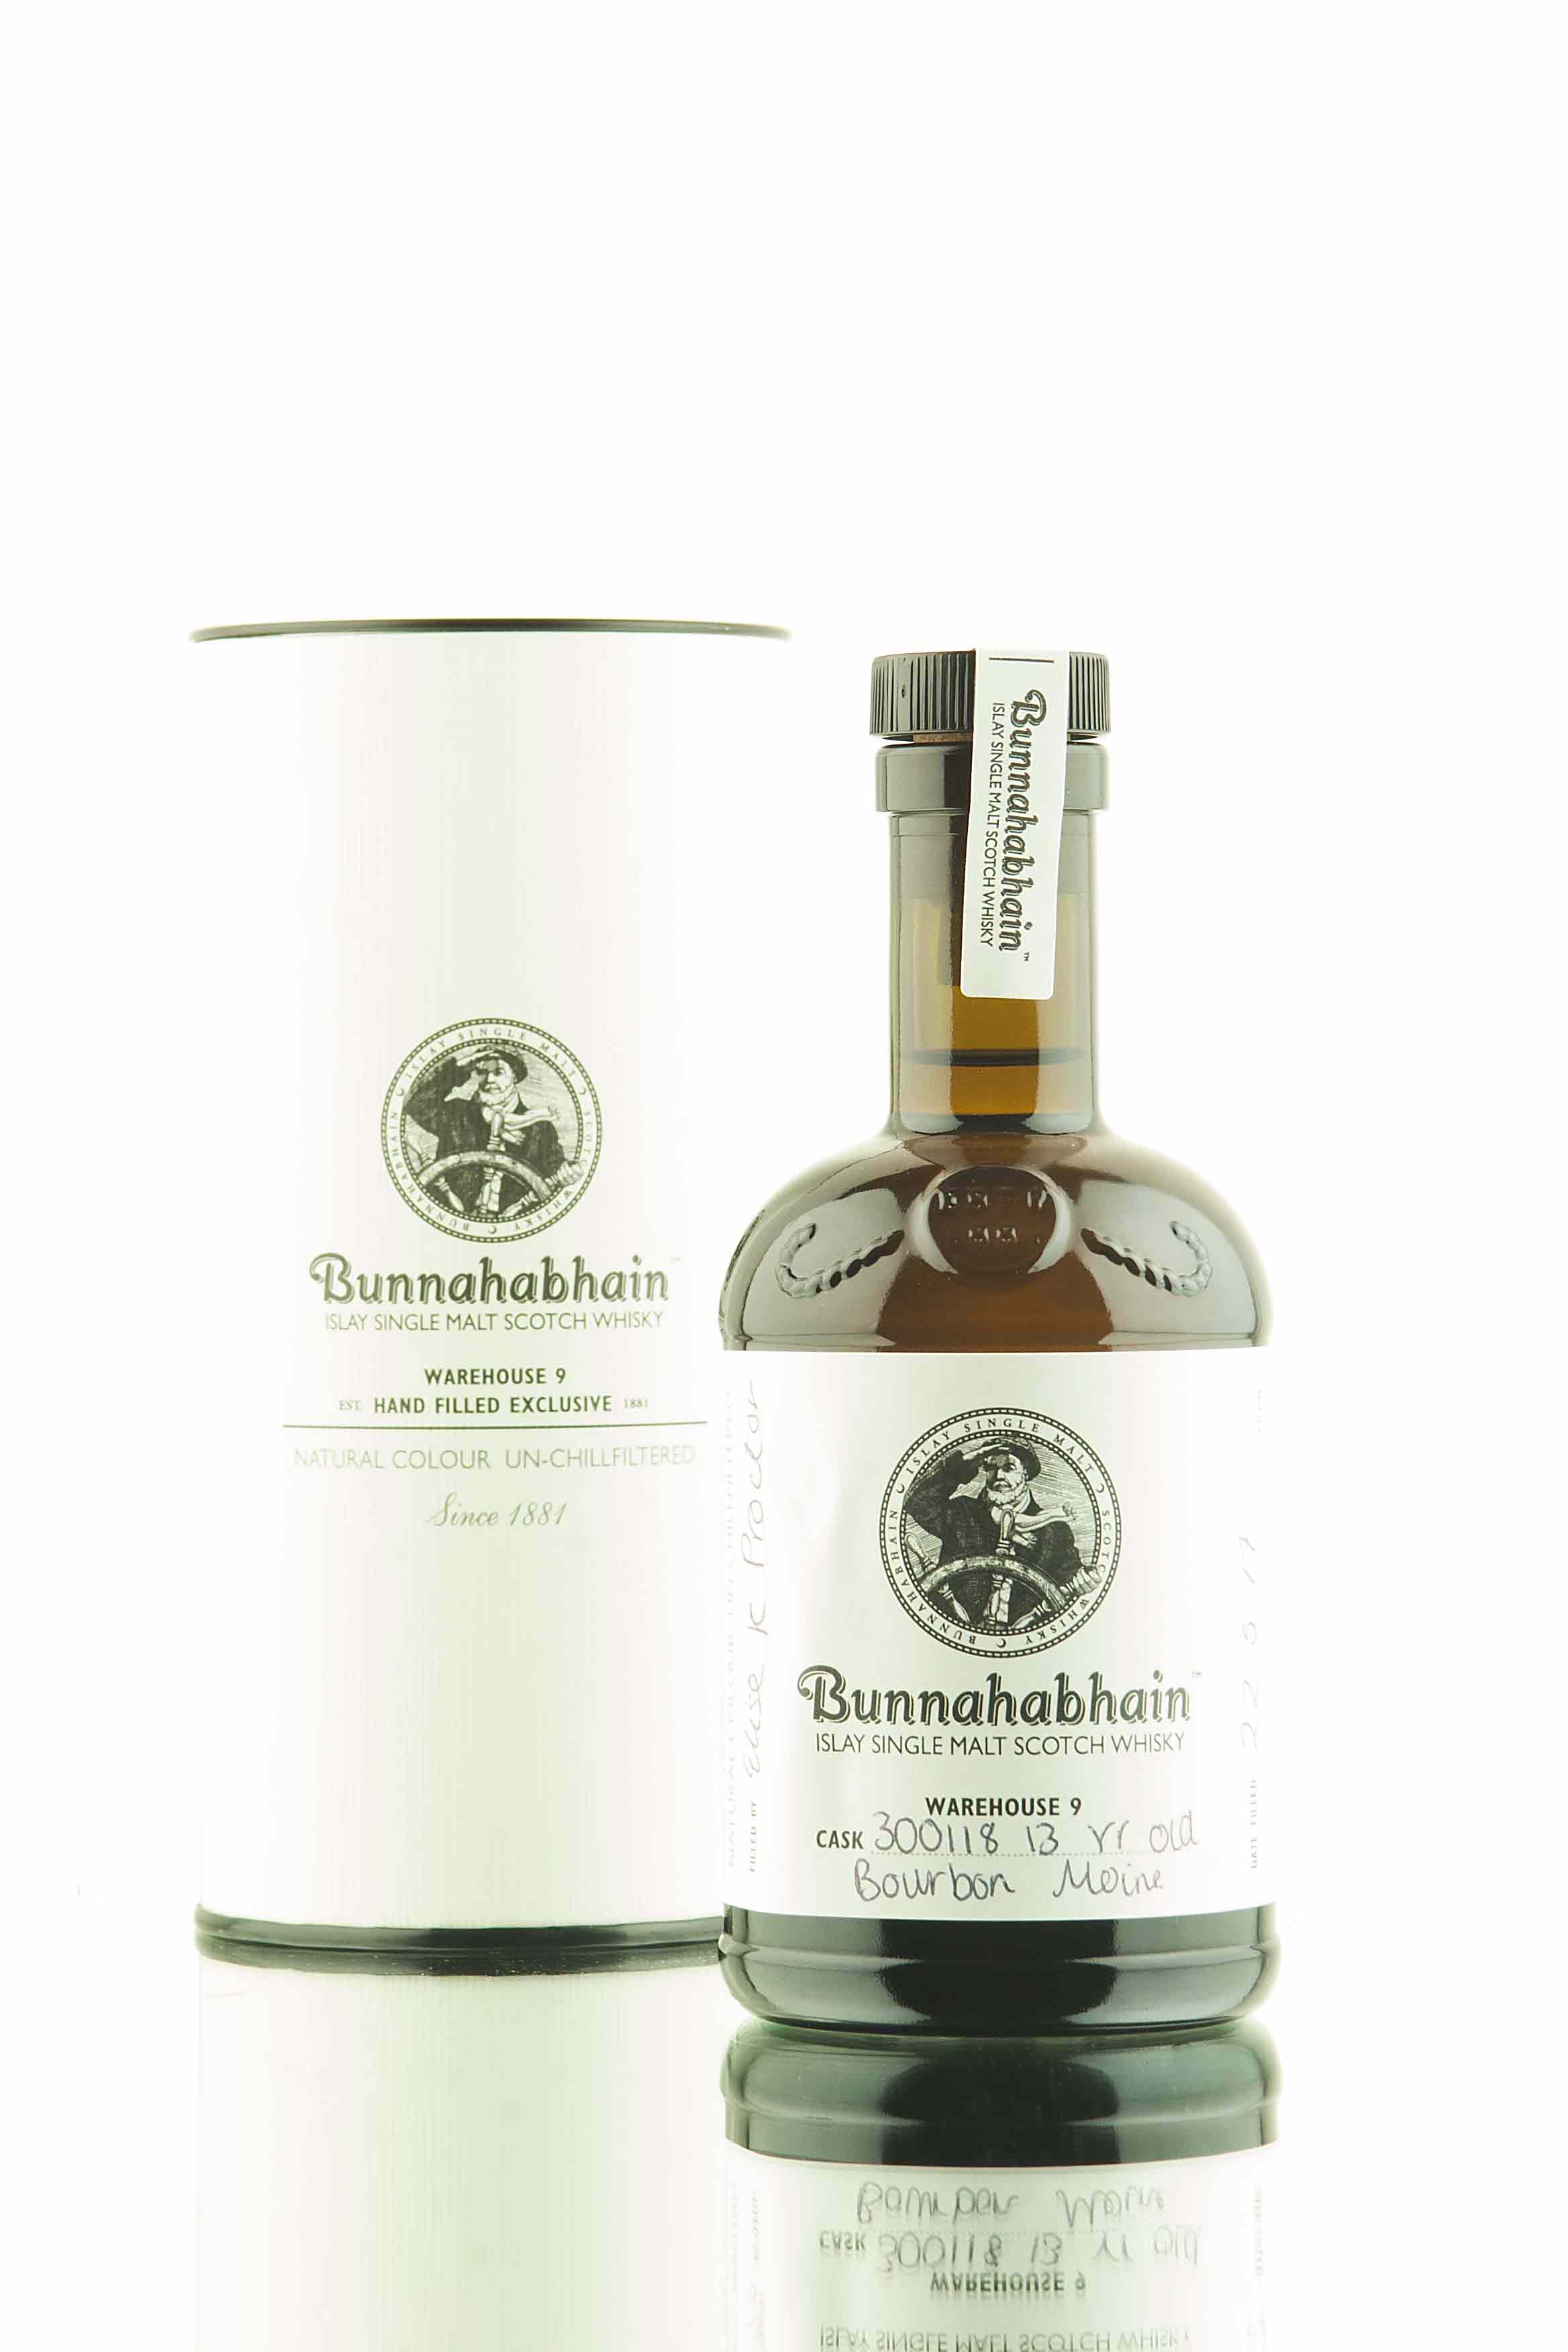 Bunnahabhain Hand Filled Exclusive | Bourbon Cask 300118